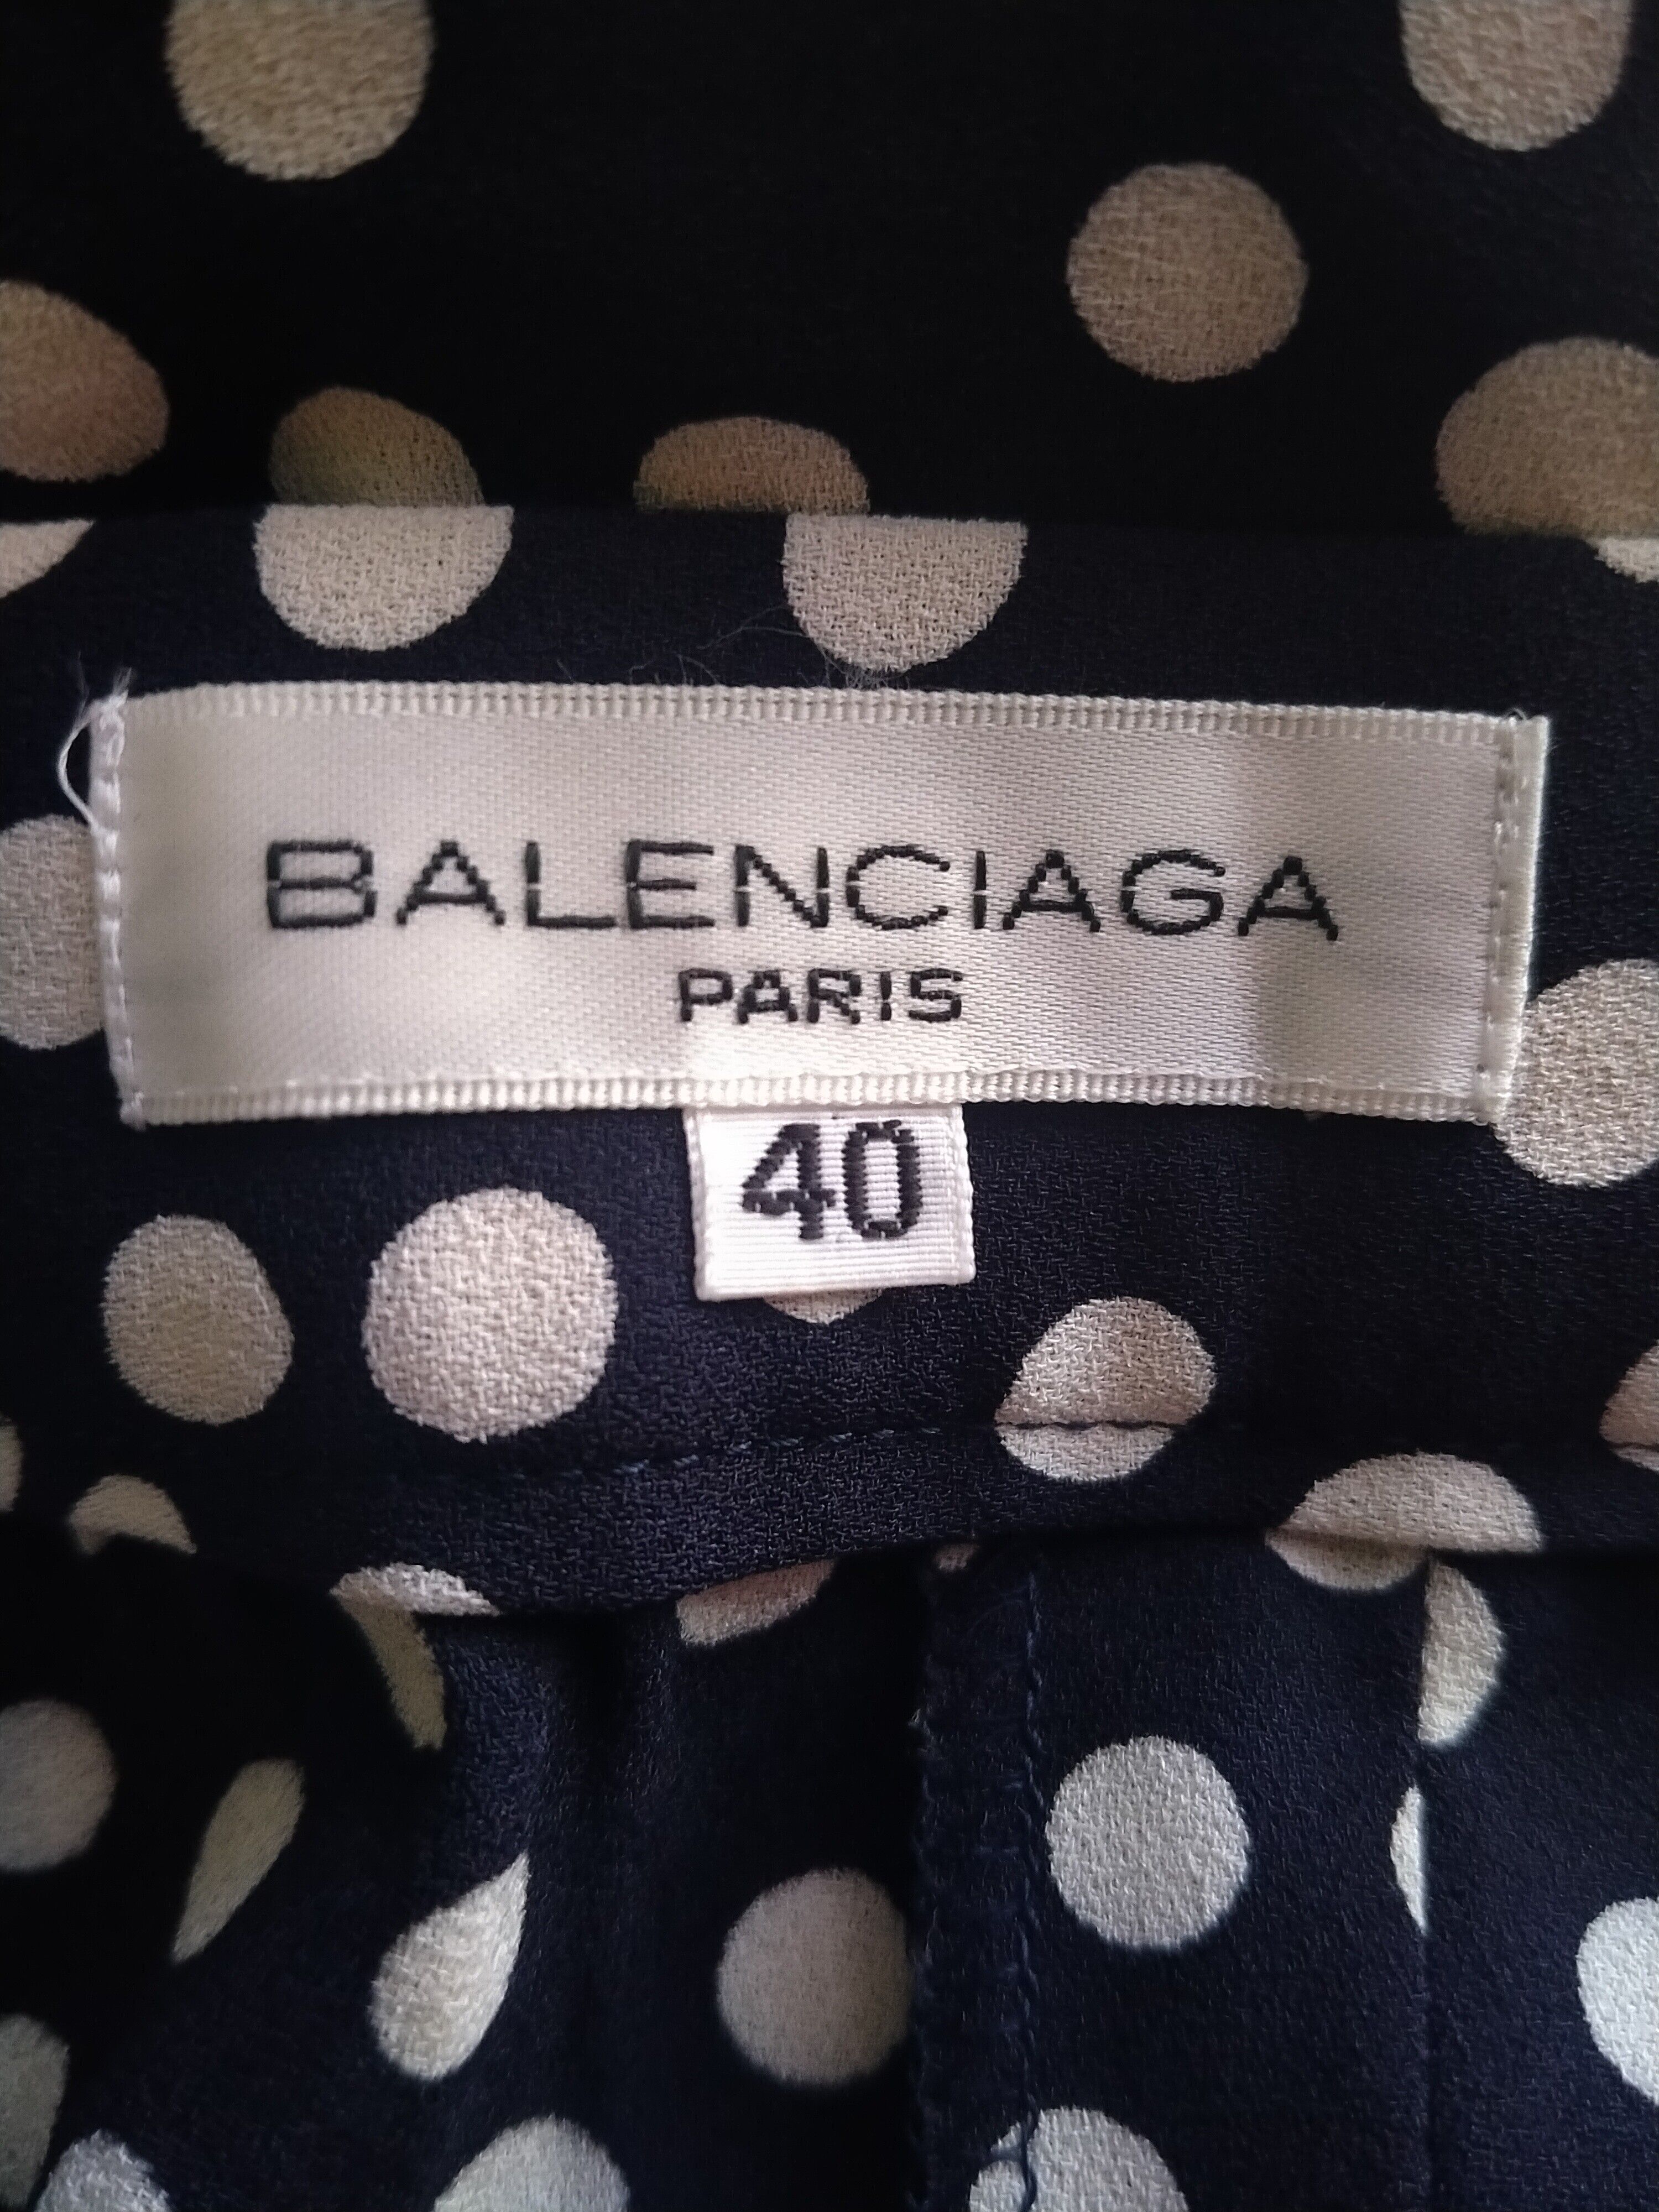 Balenciaga Rare!! Vintage Balenciaga Paris Polka Dot Side Zipper Pant Size US 30 / EU 46 - 9 Thumbnail